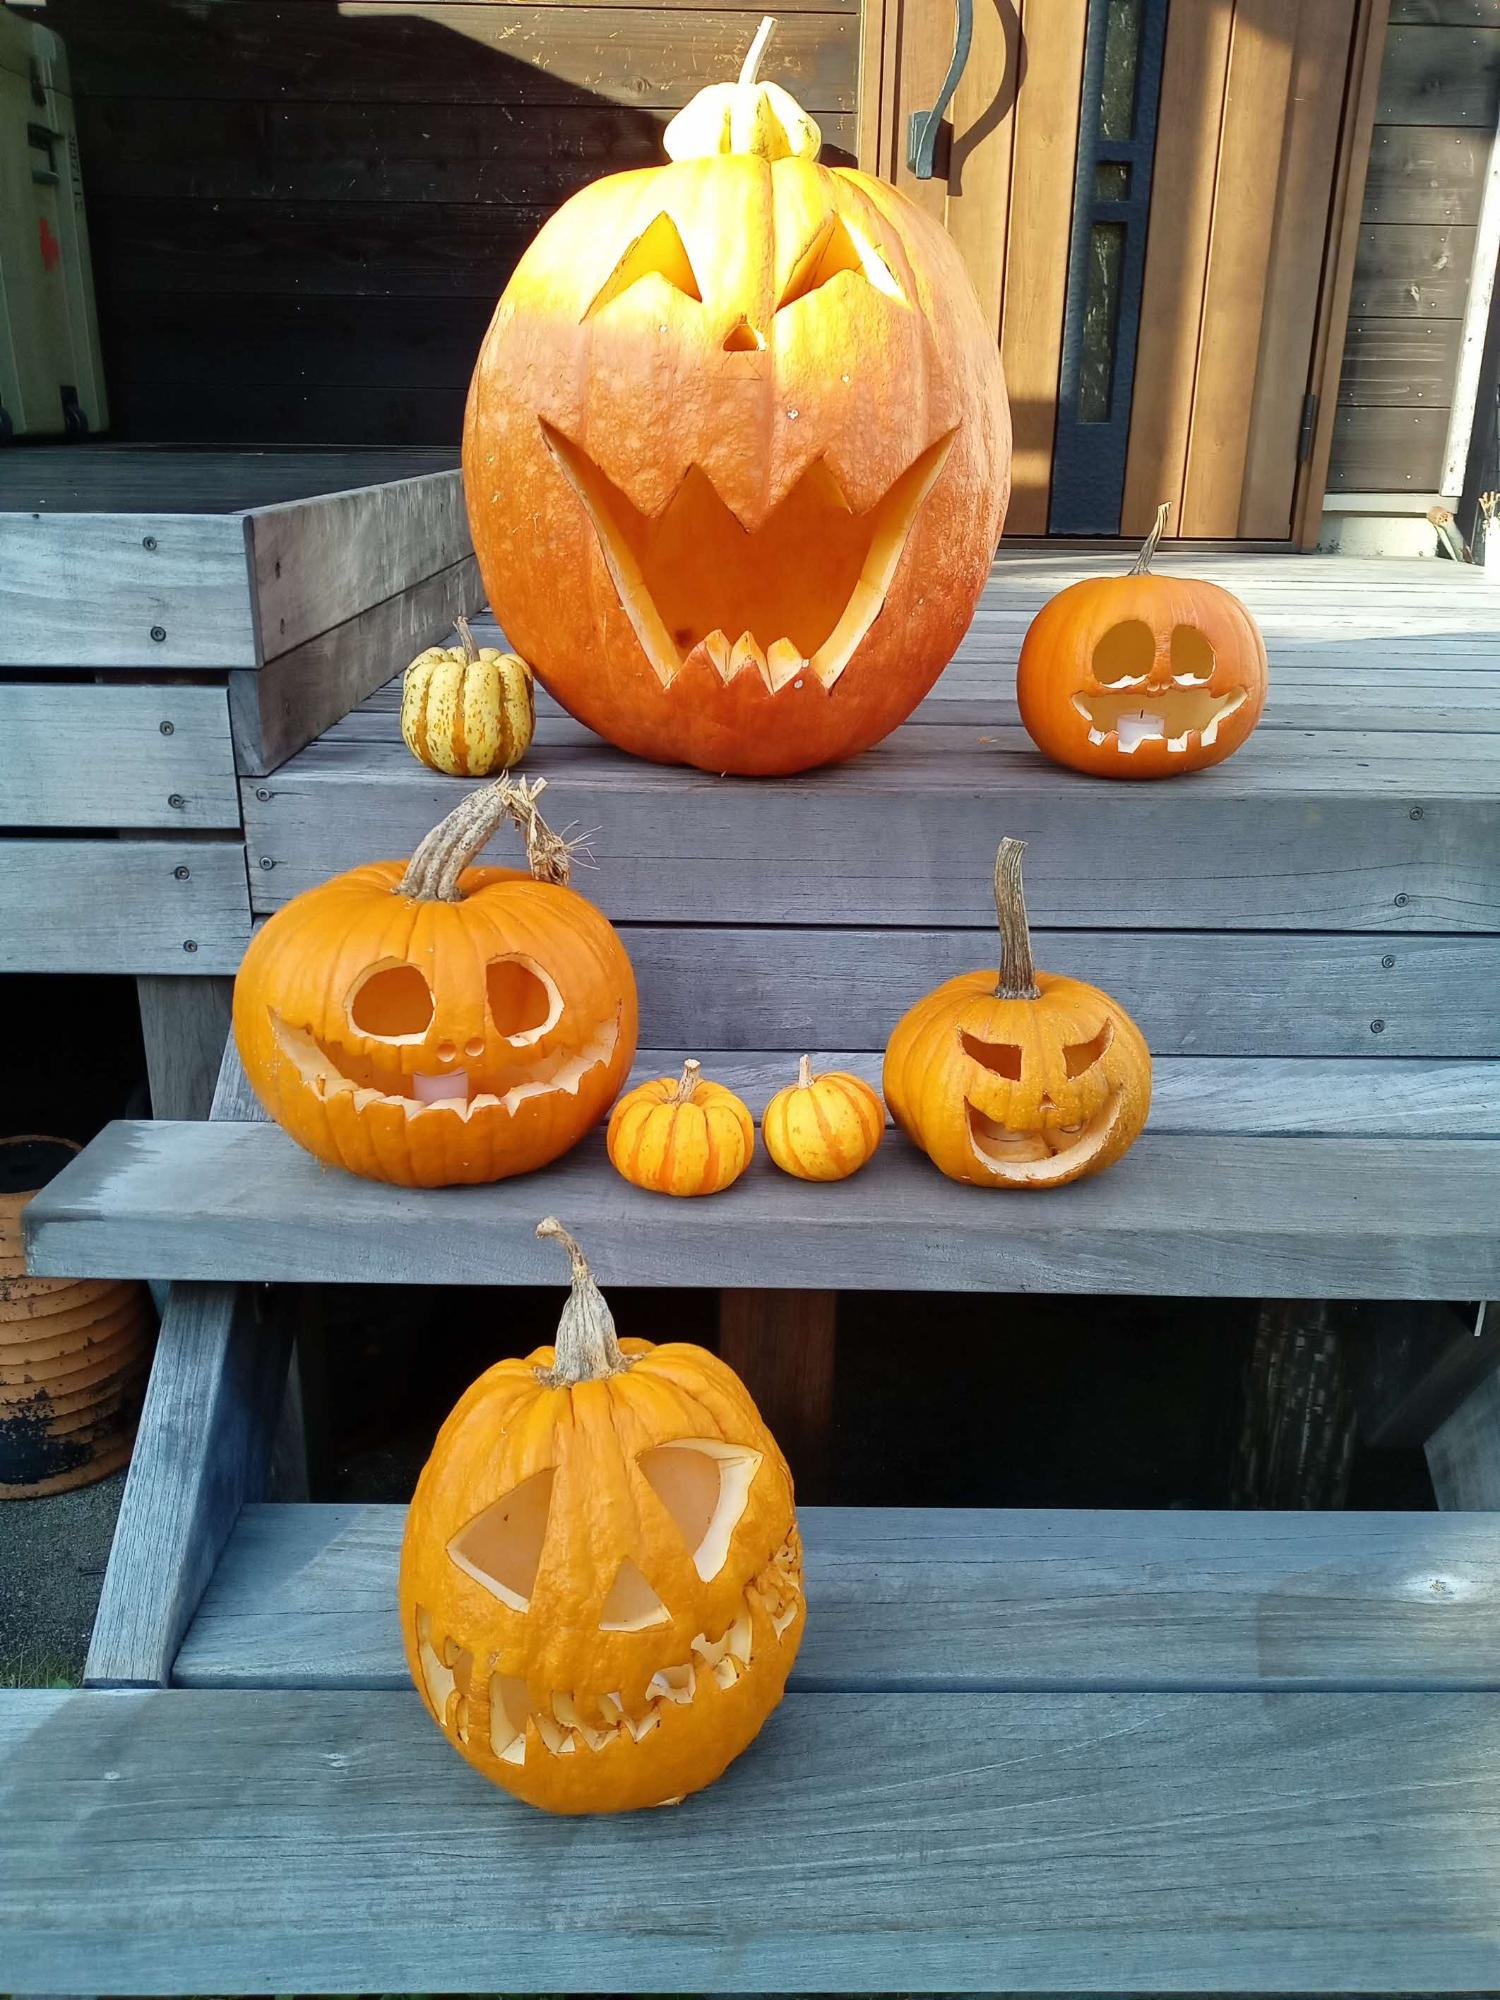 かぼちゃをくり抜いて作られたジャックオーランタンが階段上に何個も並ぶ様子